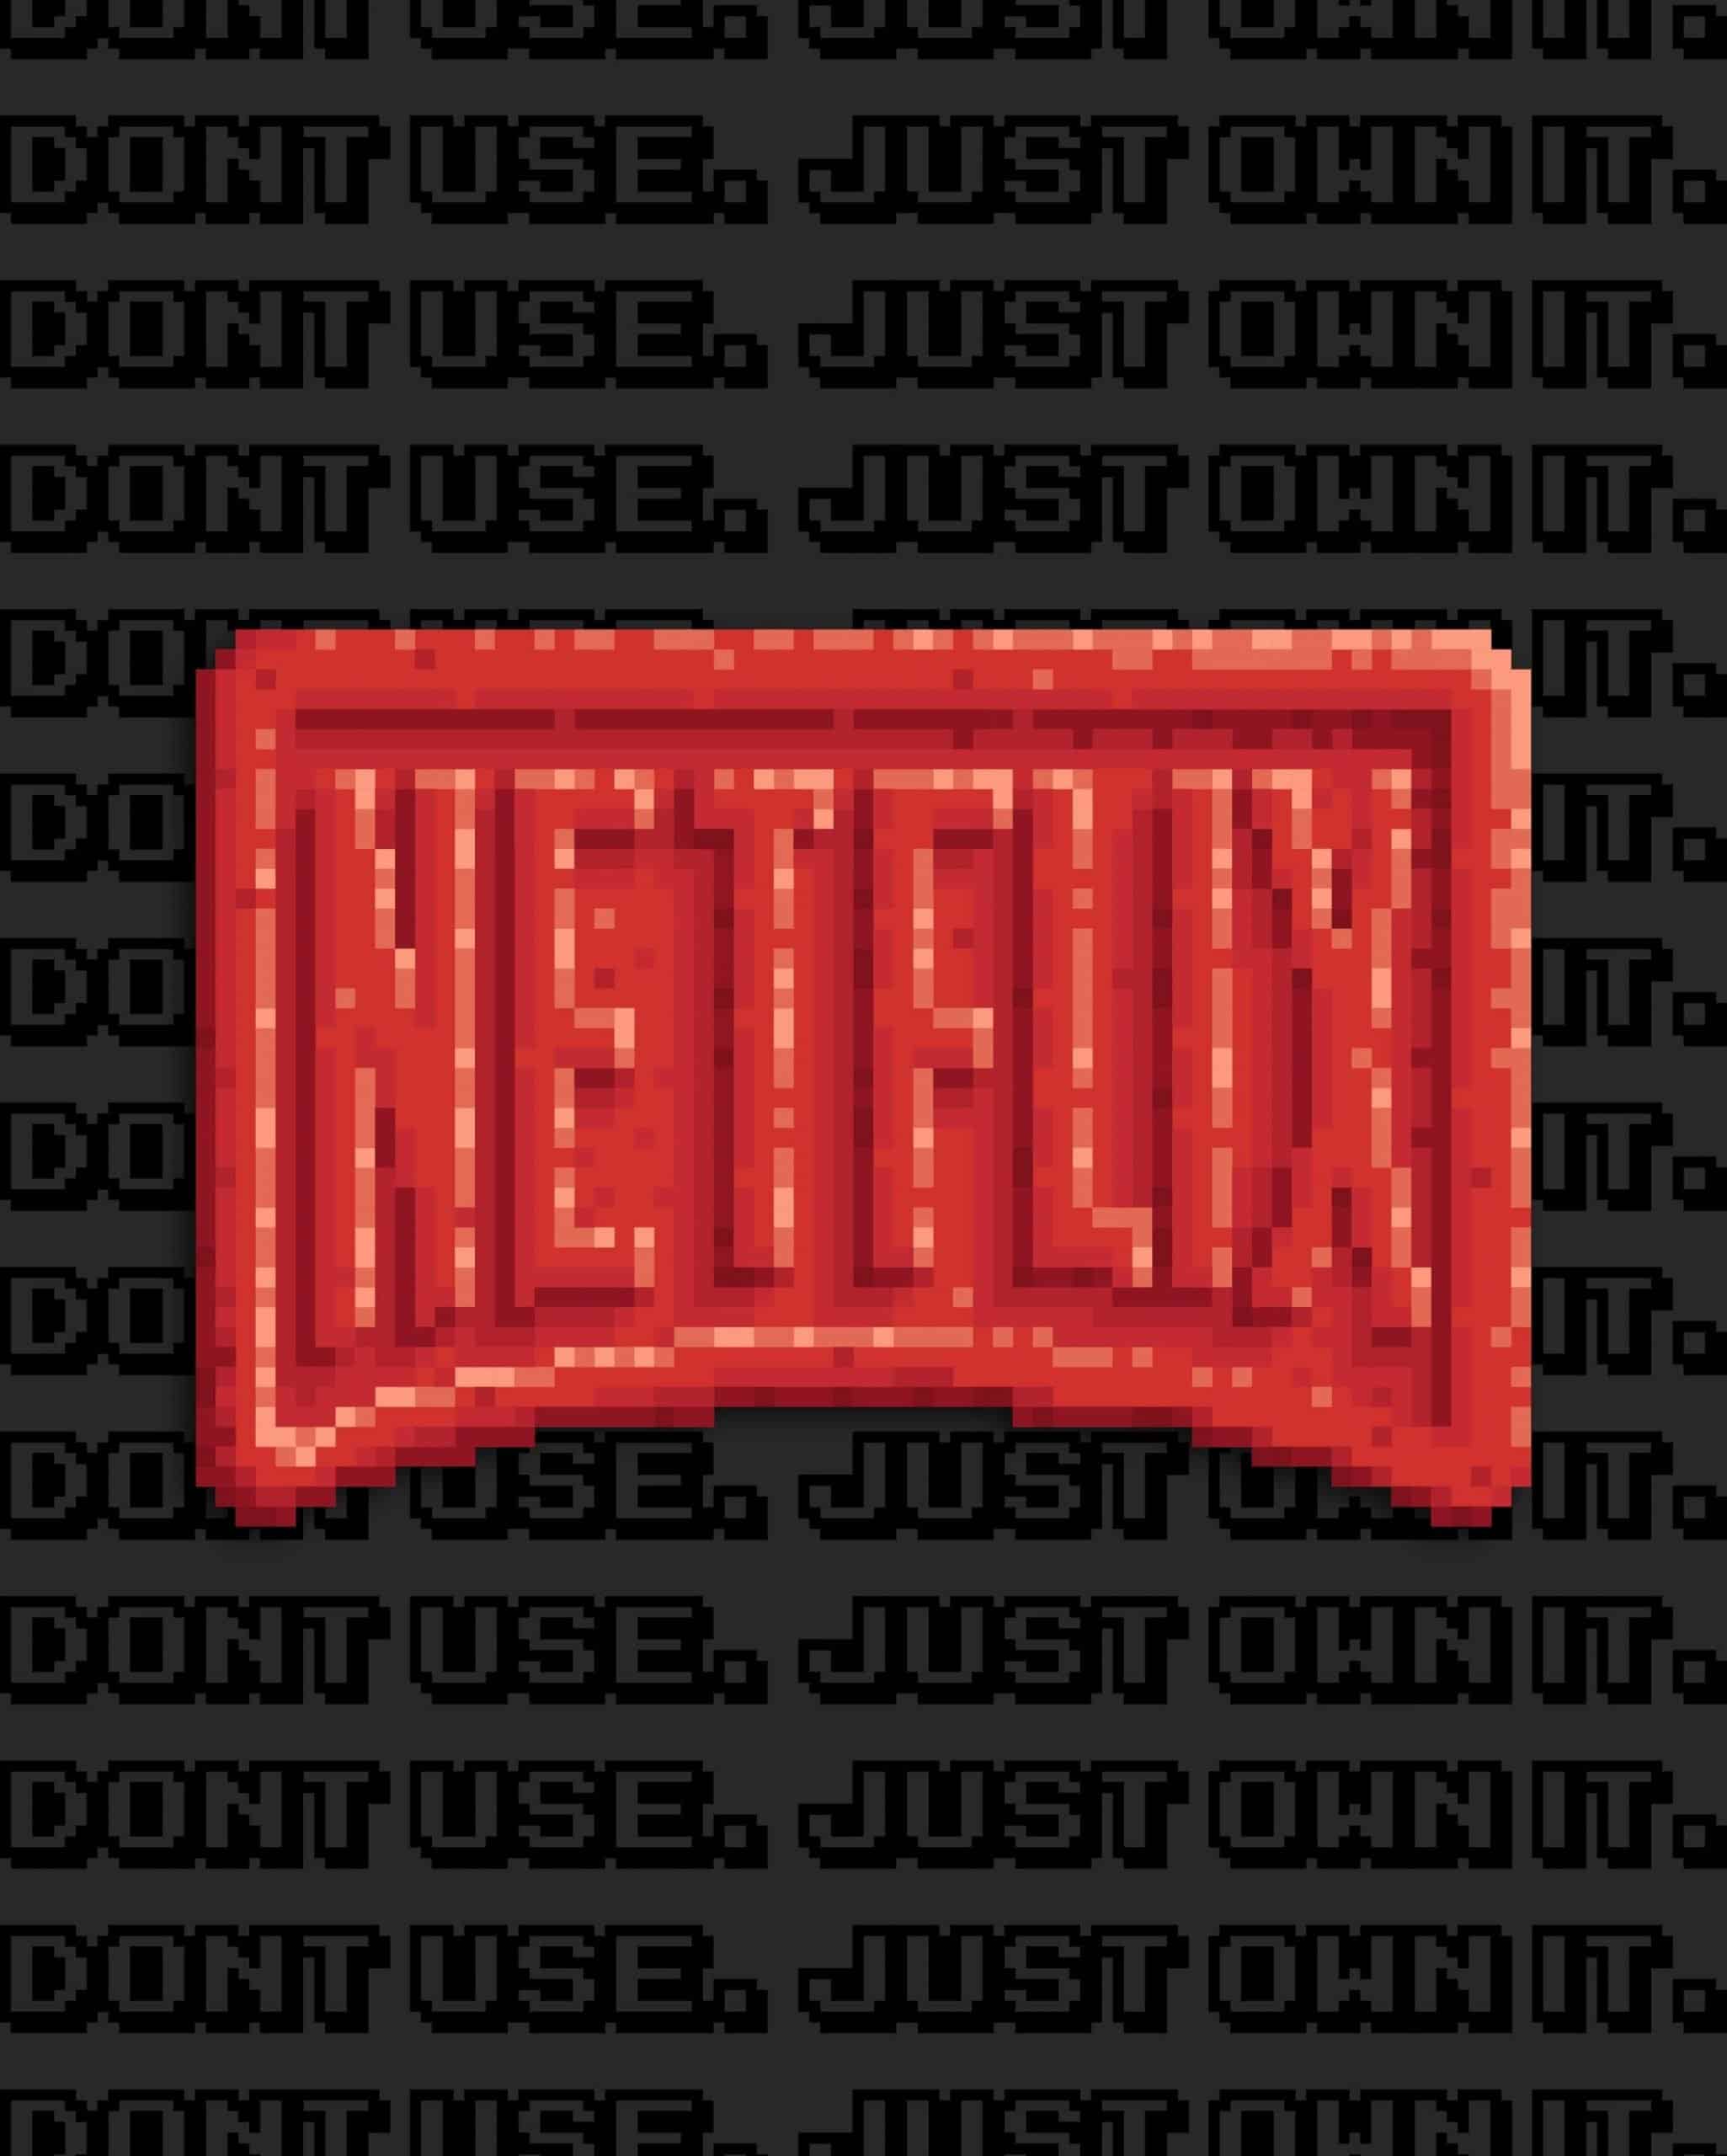 Daily News | Online News PIXXTASY NFT featuring Netflix logo